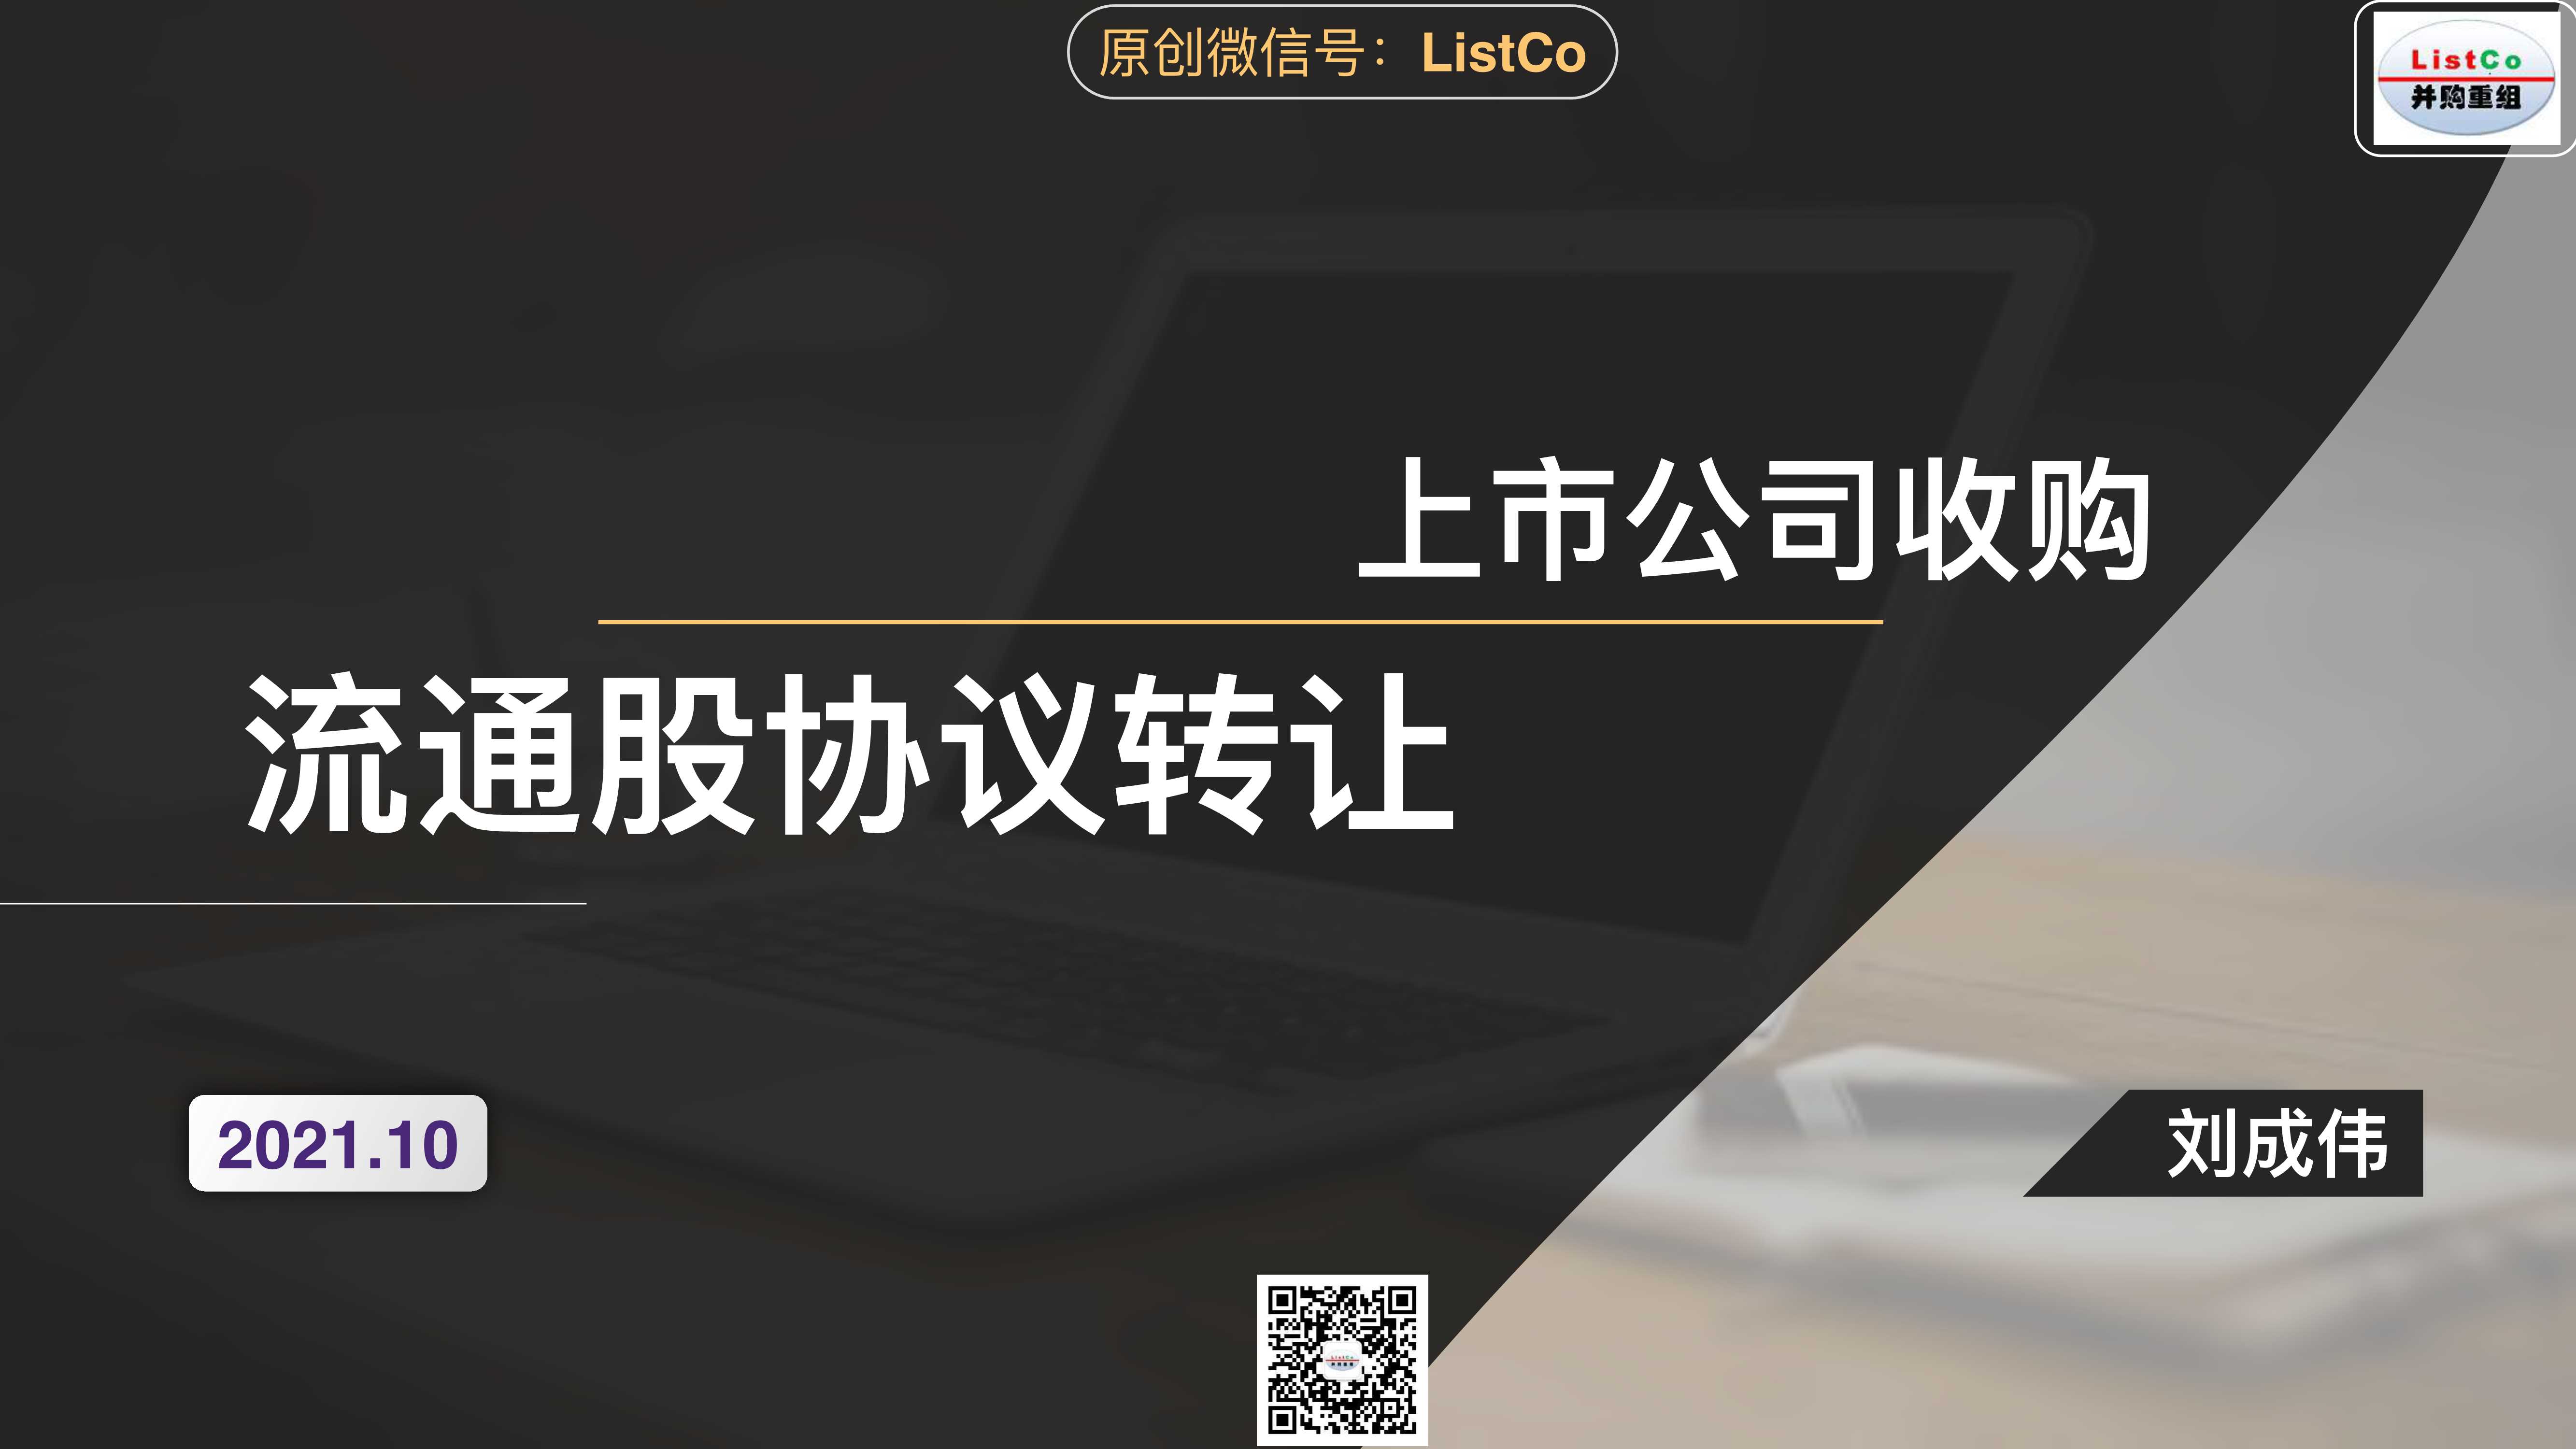 ListCo-上市公司收购流通股协议转让-2021.11-33页